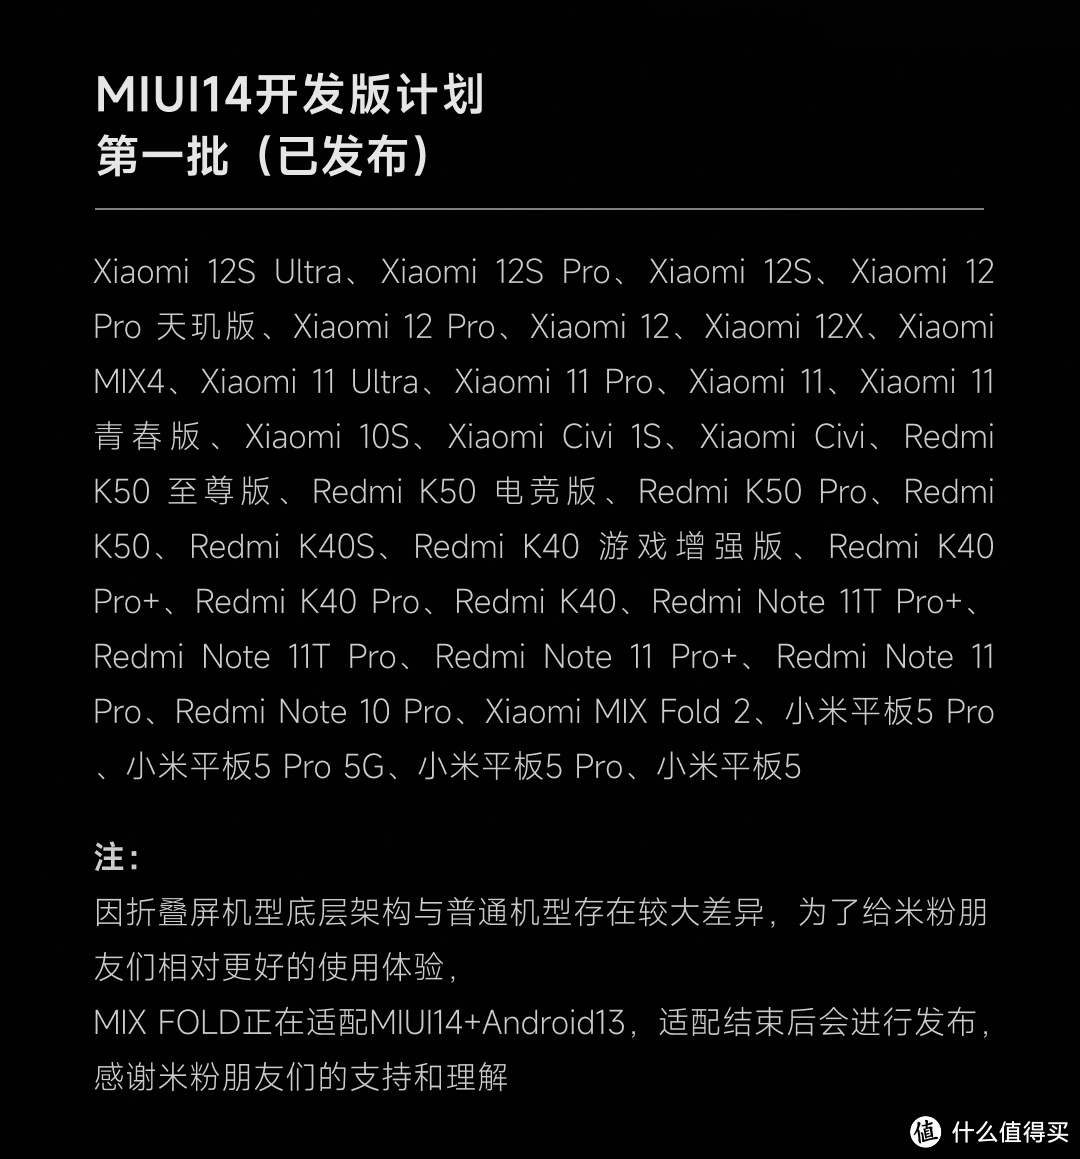 MIUI 14第二批升级计划来了！包括小米11和红米K40系列等25款机型